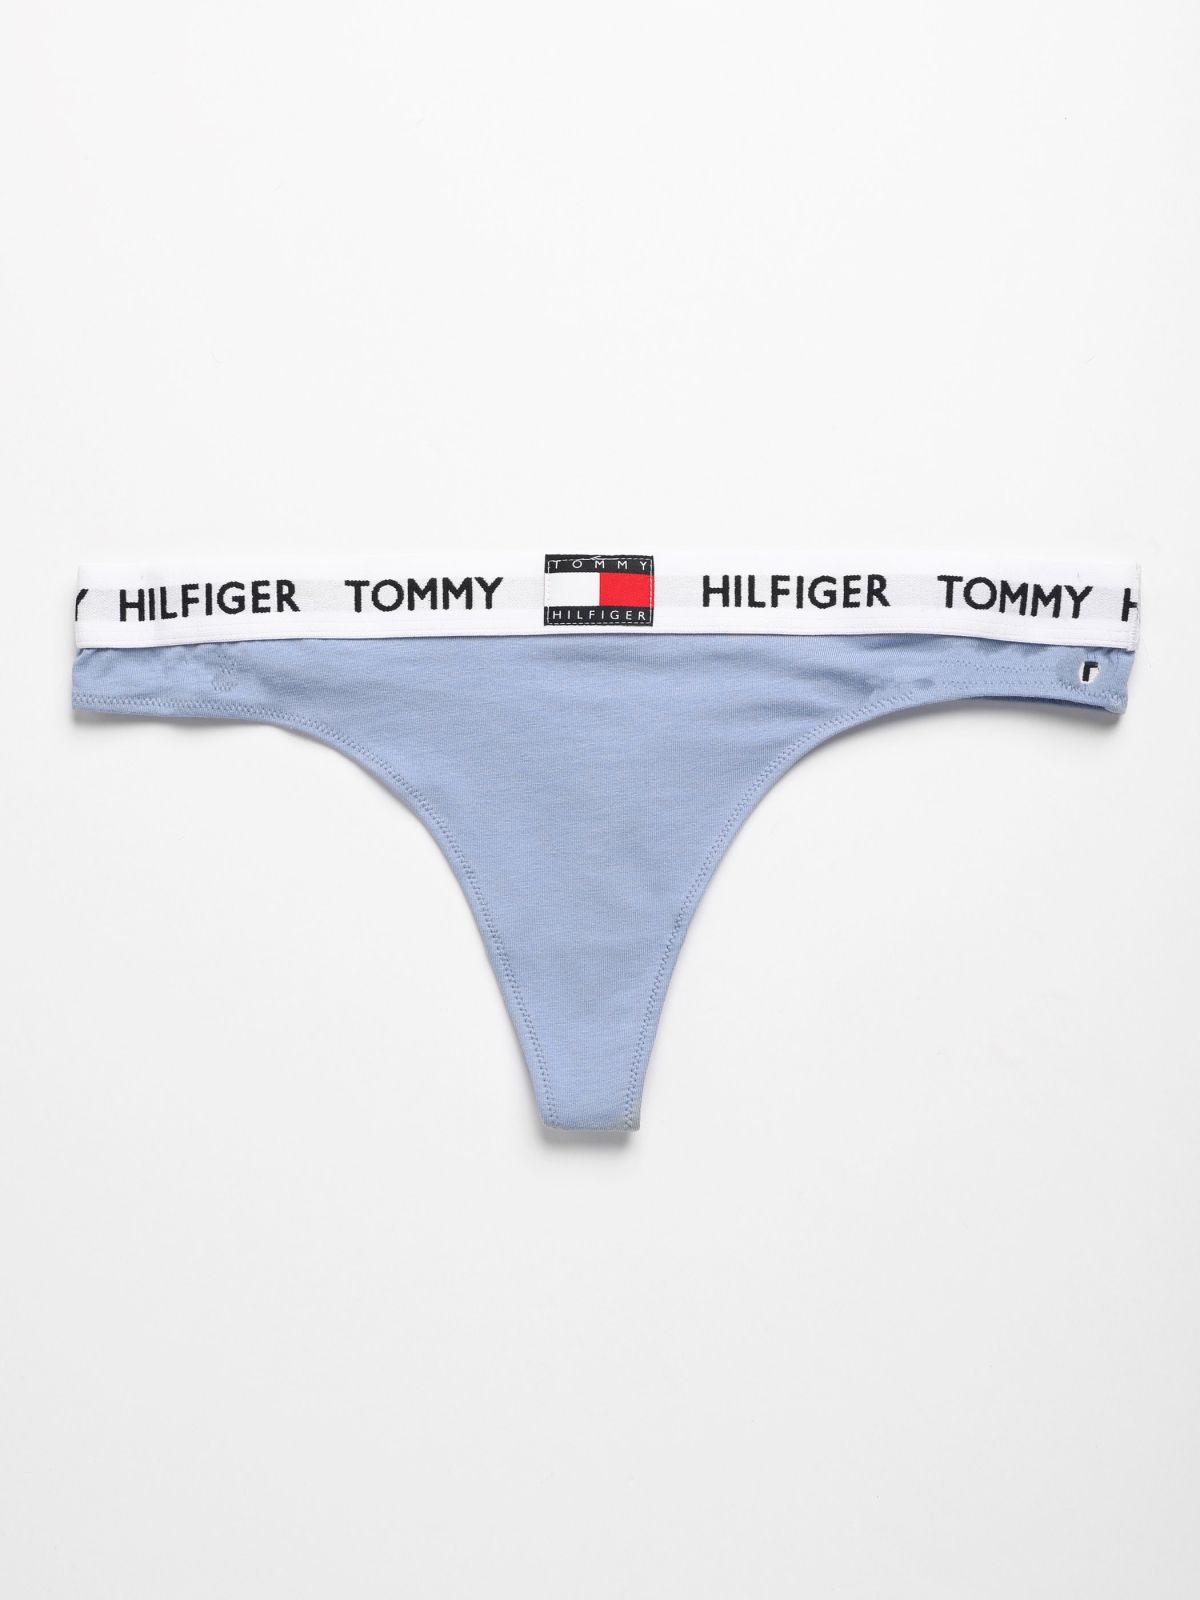  תחתוני חוטיני עם הדפס לוגו רץ / נשים של TOMMY HILFIGER